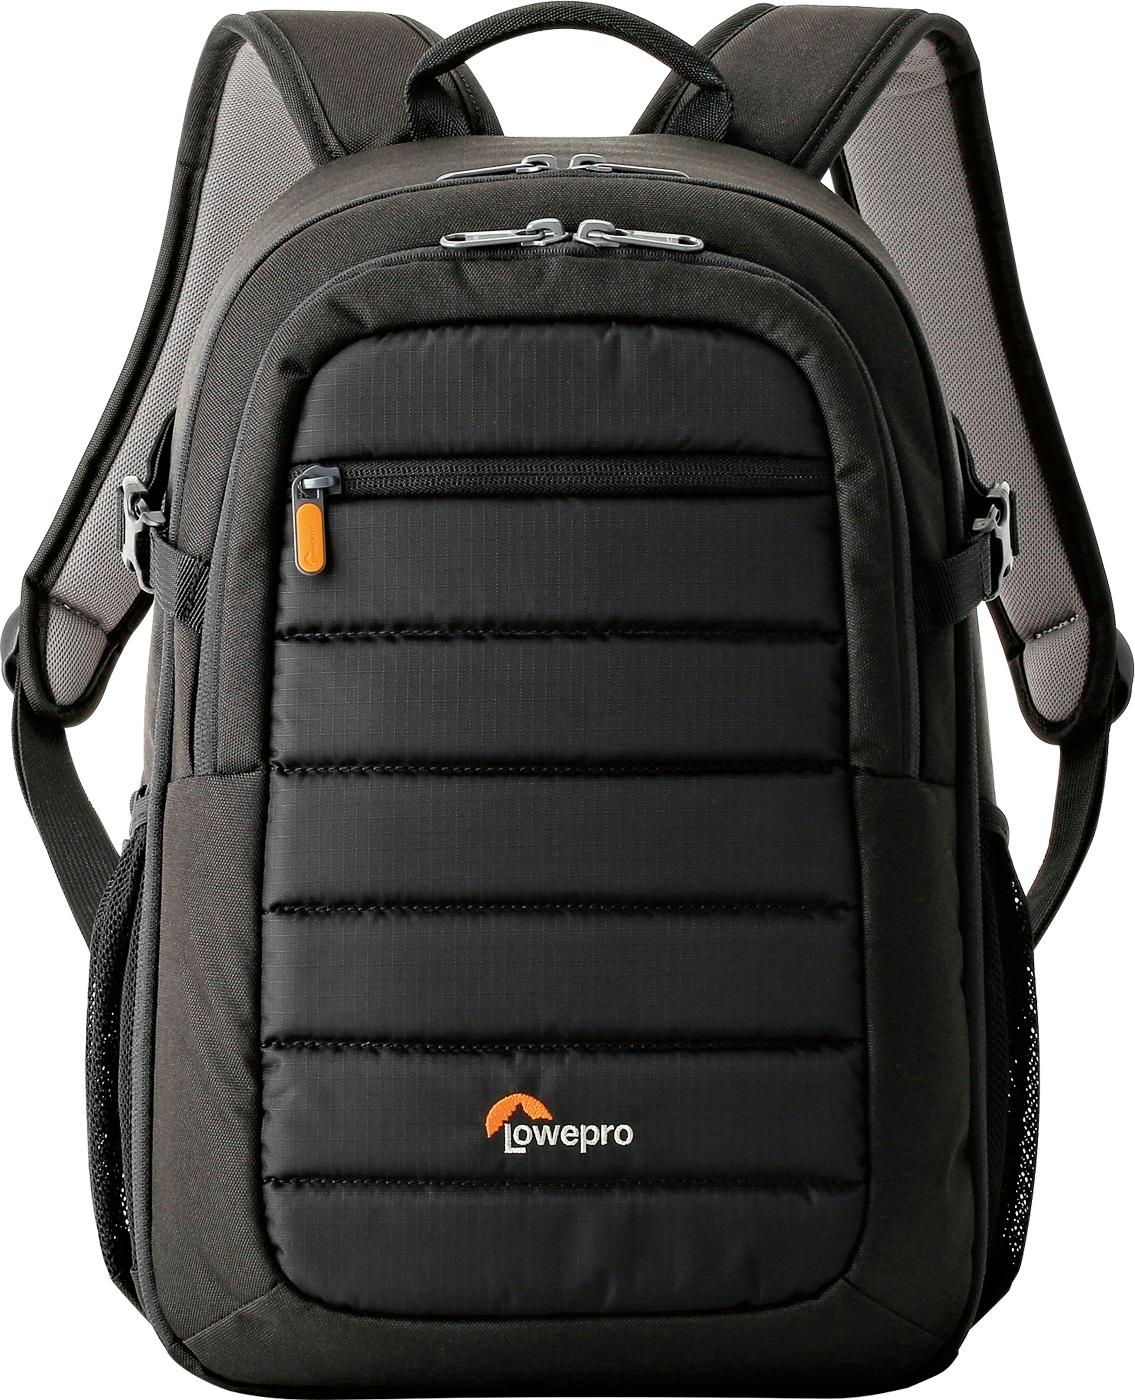 Lowepro Tahoe BP 150 Camera Backpack Black LP36892 - Best Buy